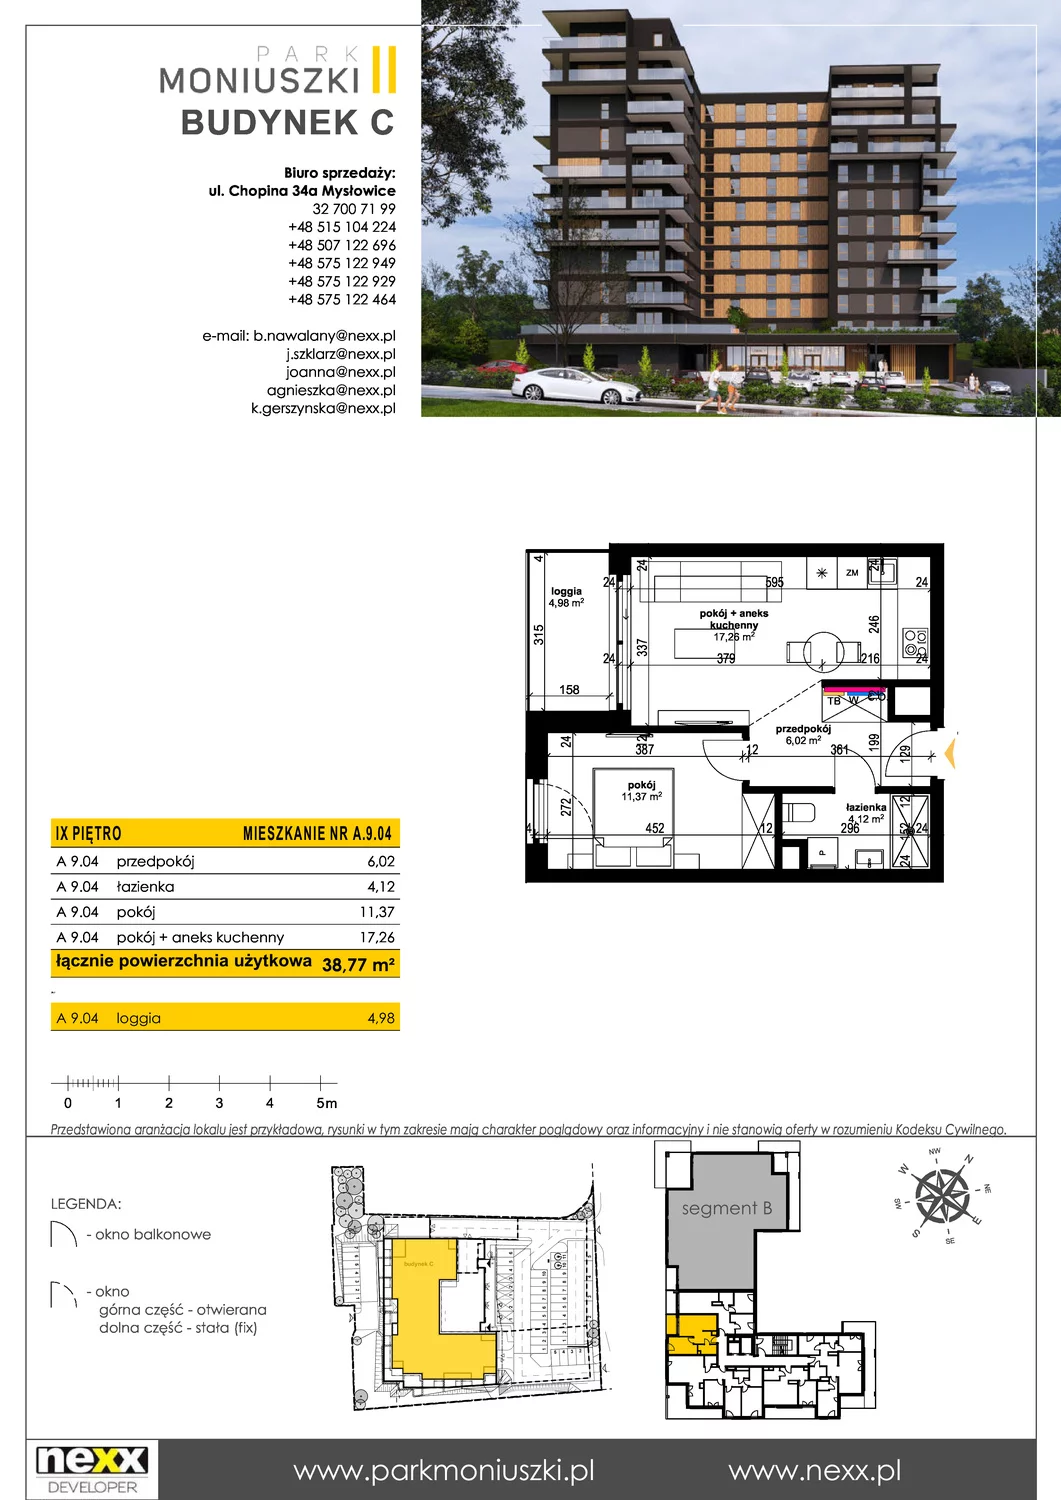 Mieszkanie 38,77 m², piętro 9, oferta nr A 9.04, Osiedle Park Moniuszki, Mysłowice, ul. Okrzei / Wielka Skotnica